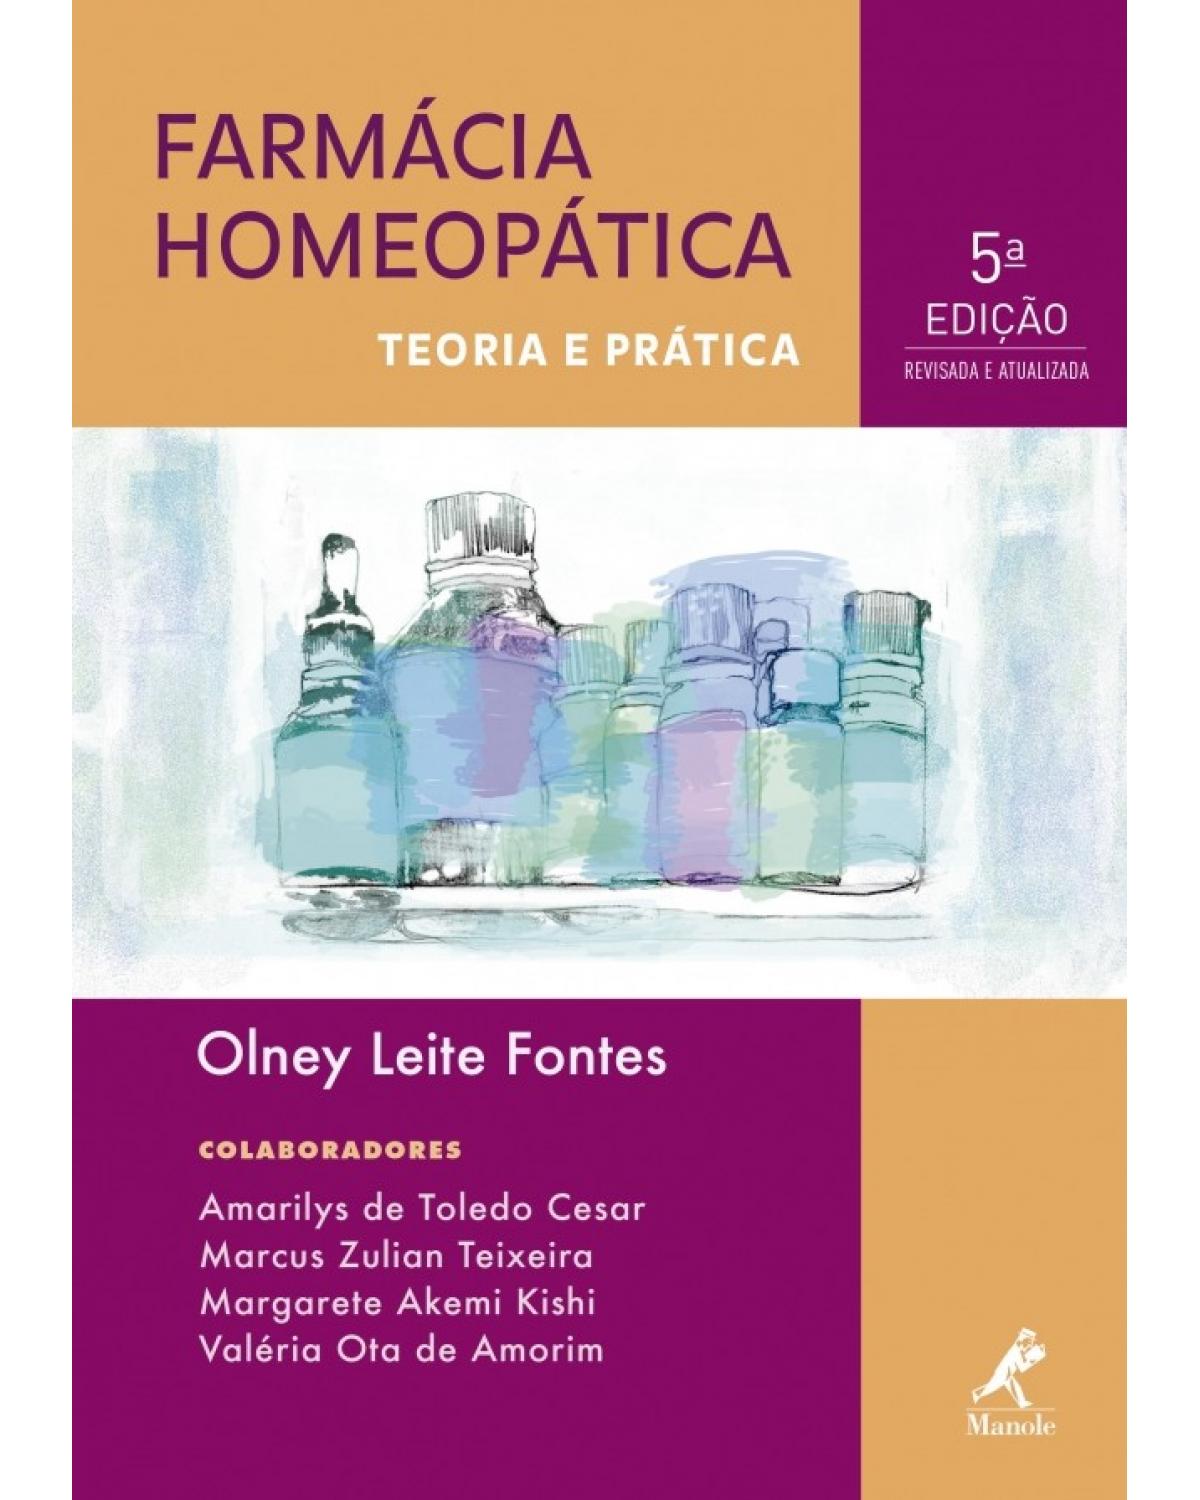 Farmácia homeopática - Teoria e prática - 5ª Edição | 2017